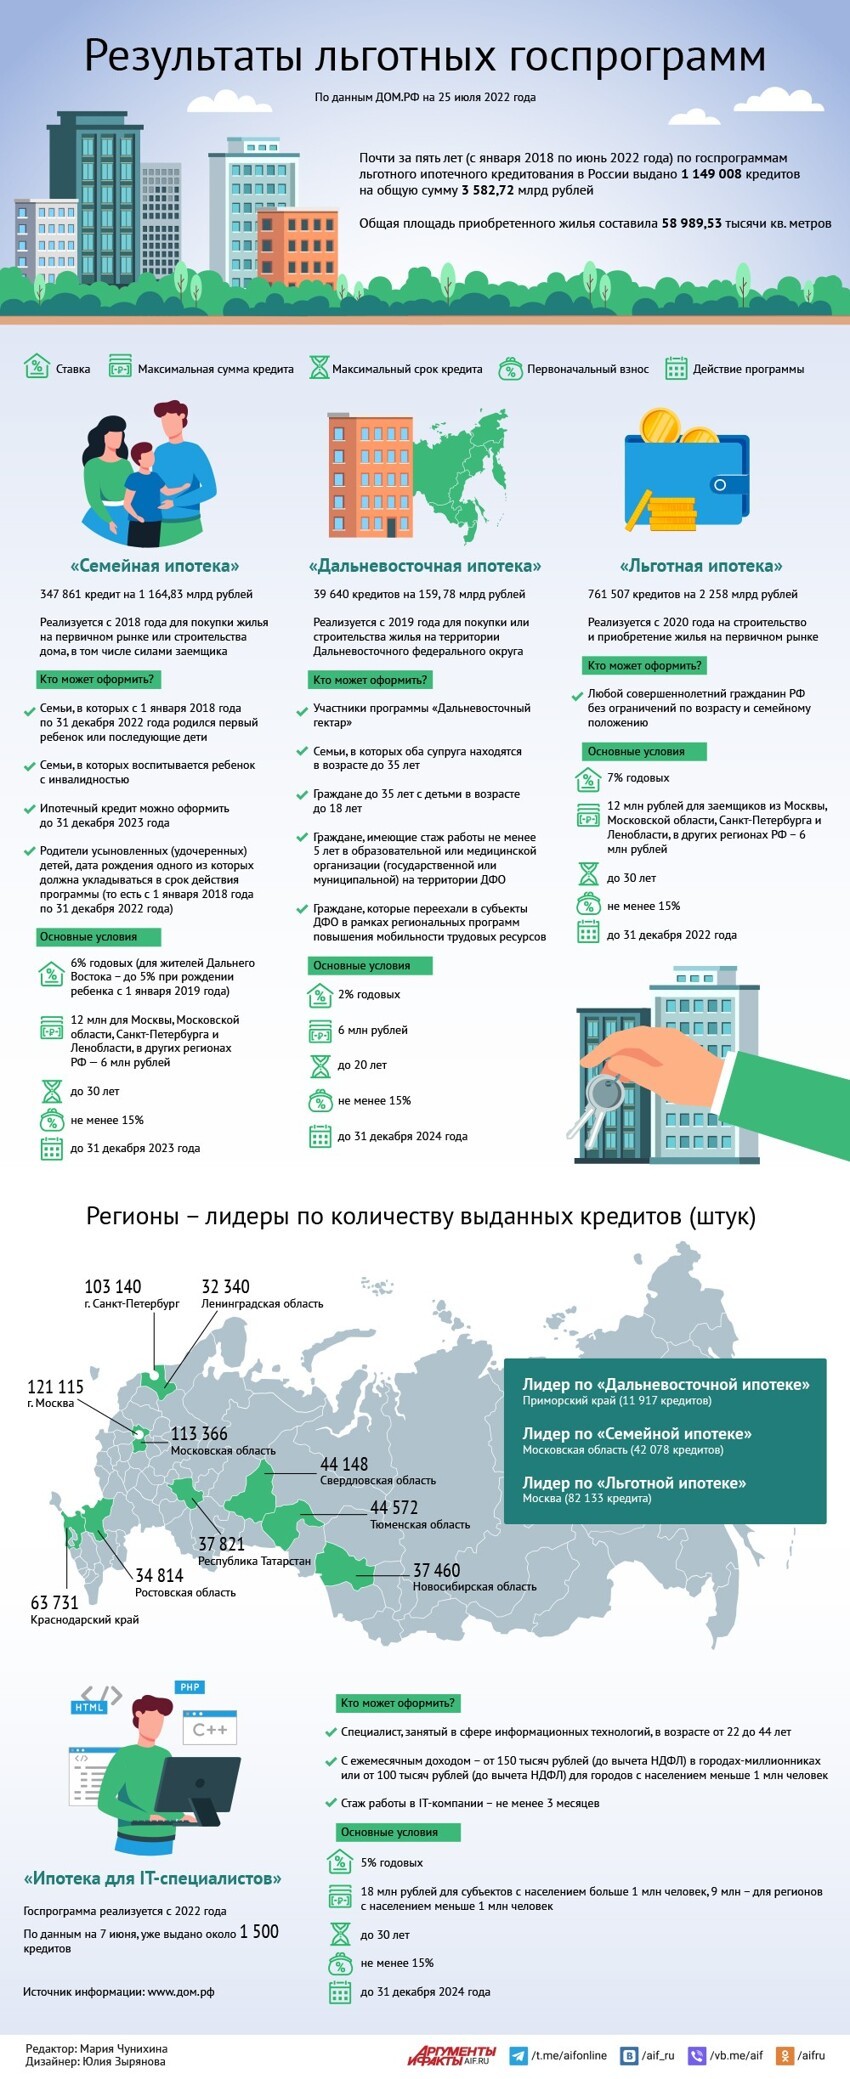 Сколько льготных ипотечных кредитов выдали в России?